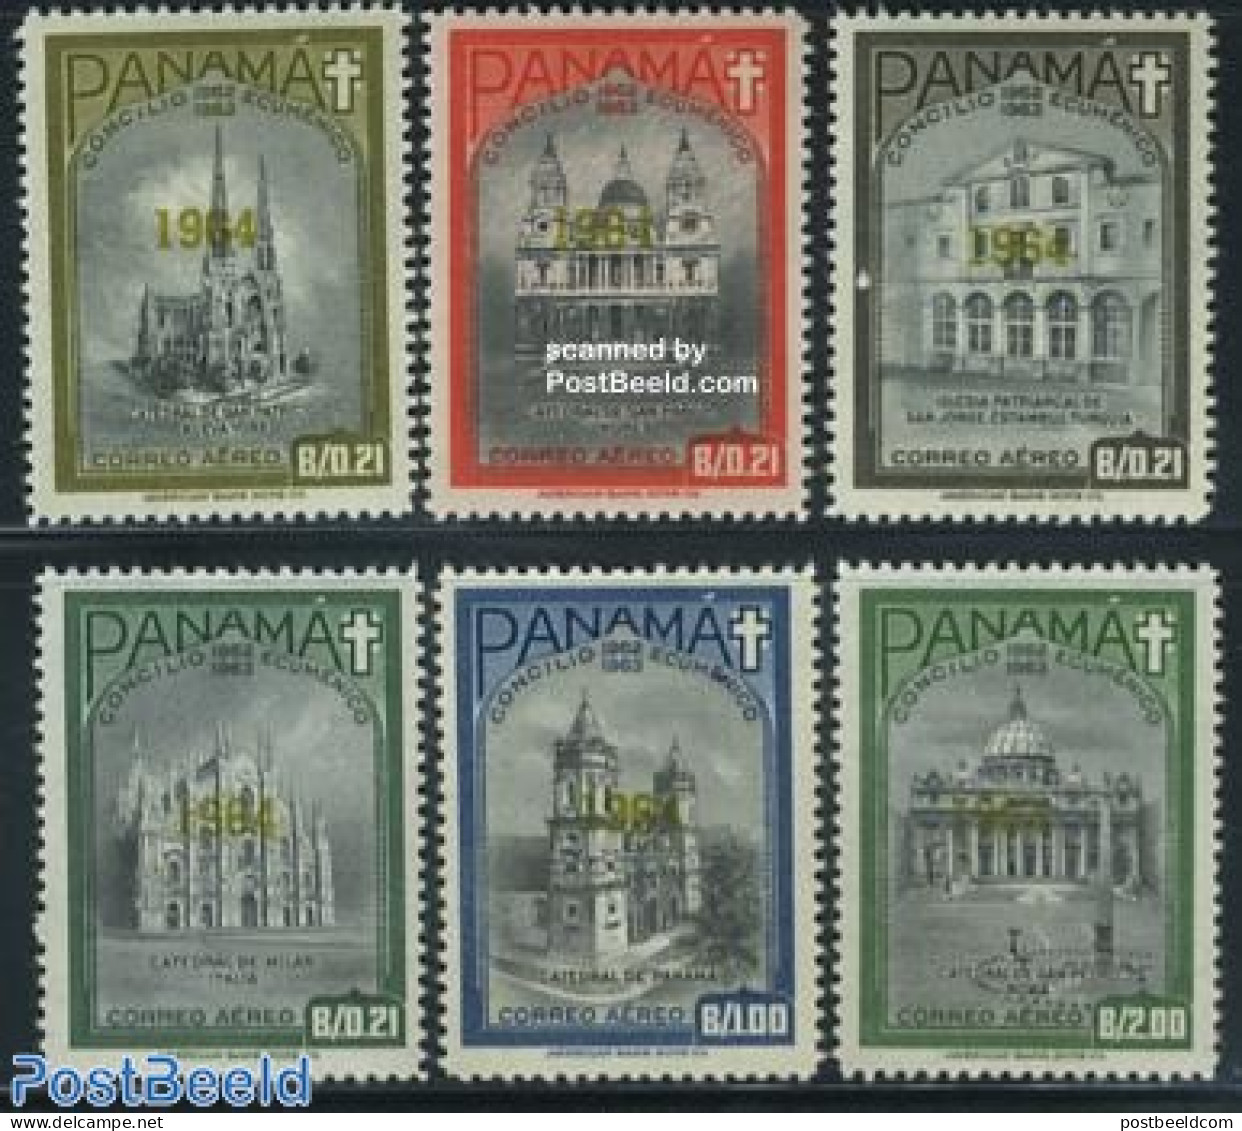 Panama 1964 Vatican Concile 6v, Overprints, Mint NH, Religion - Churches, Temples, Mosques, Synagogues - Religion - Eglises Et Cathédrales